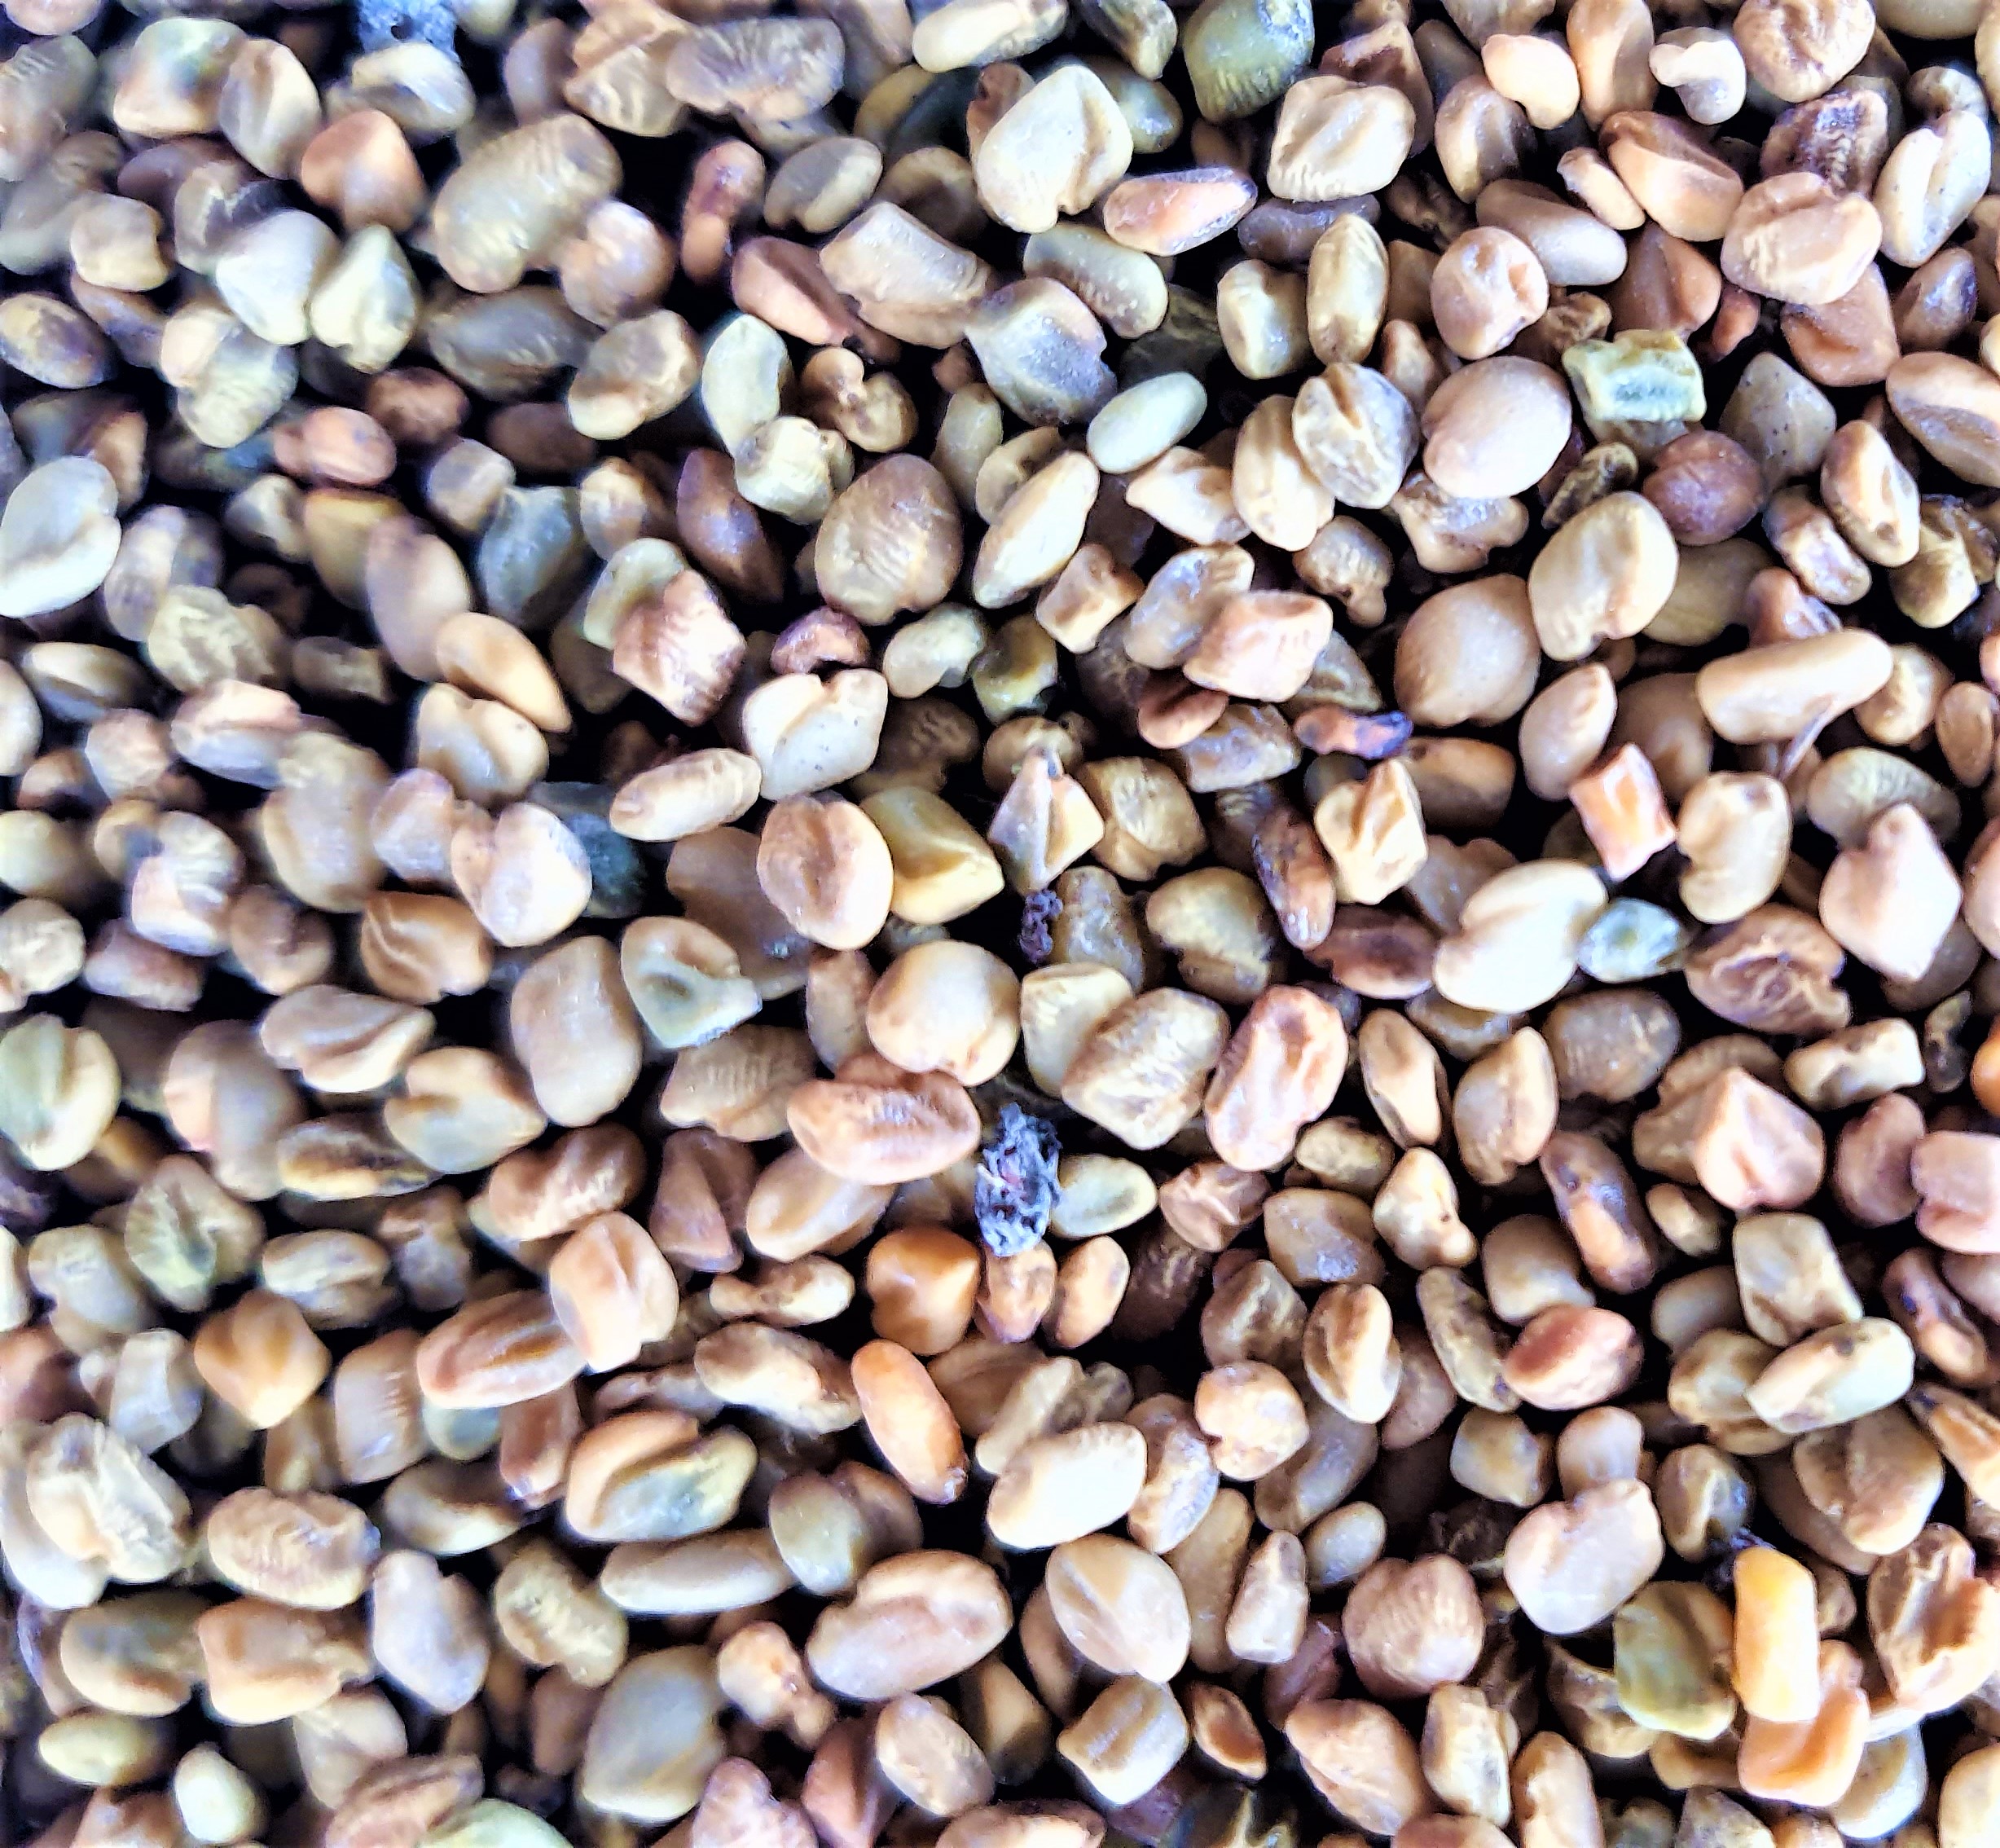 Fenugrec graines (trigonella foenum-graecum), Inde et Maghreb